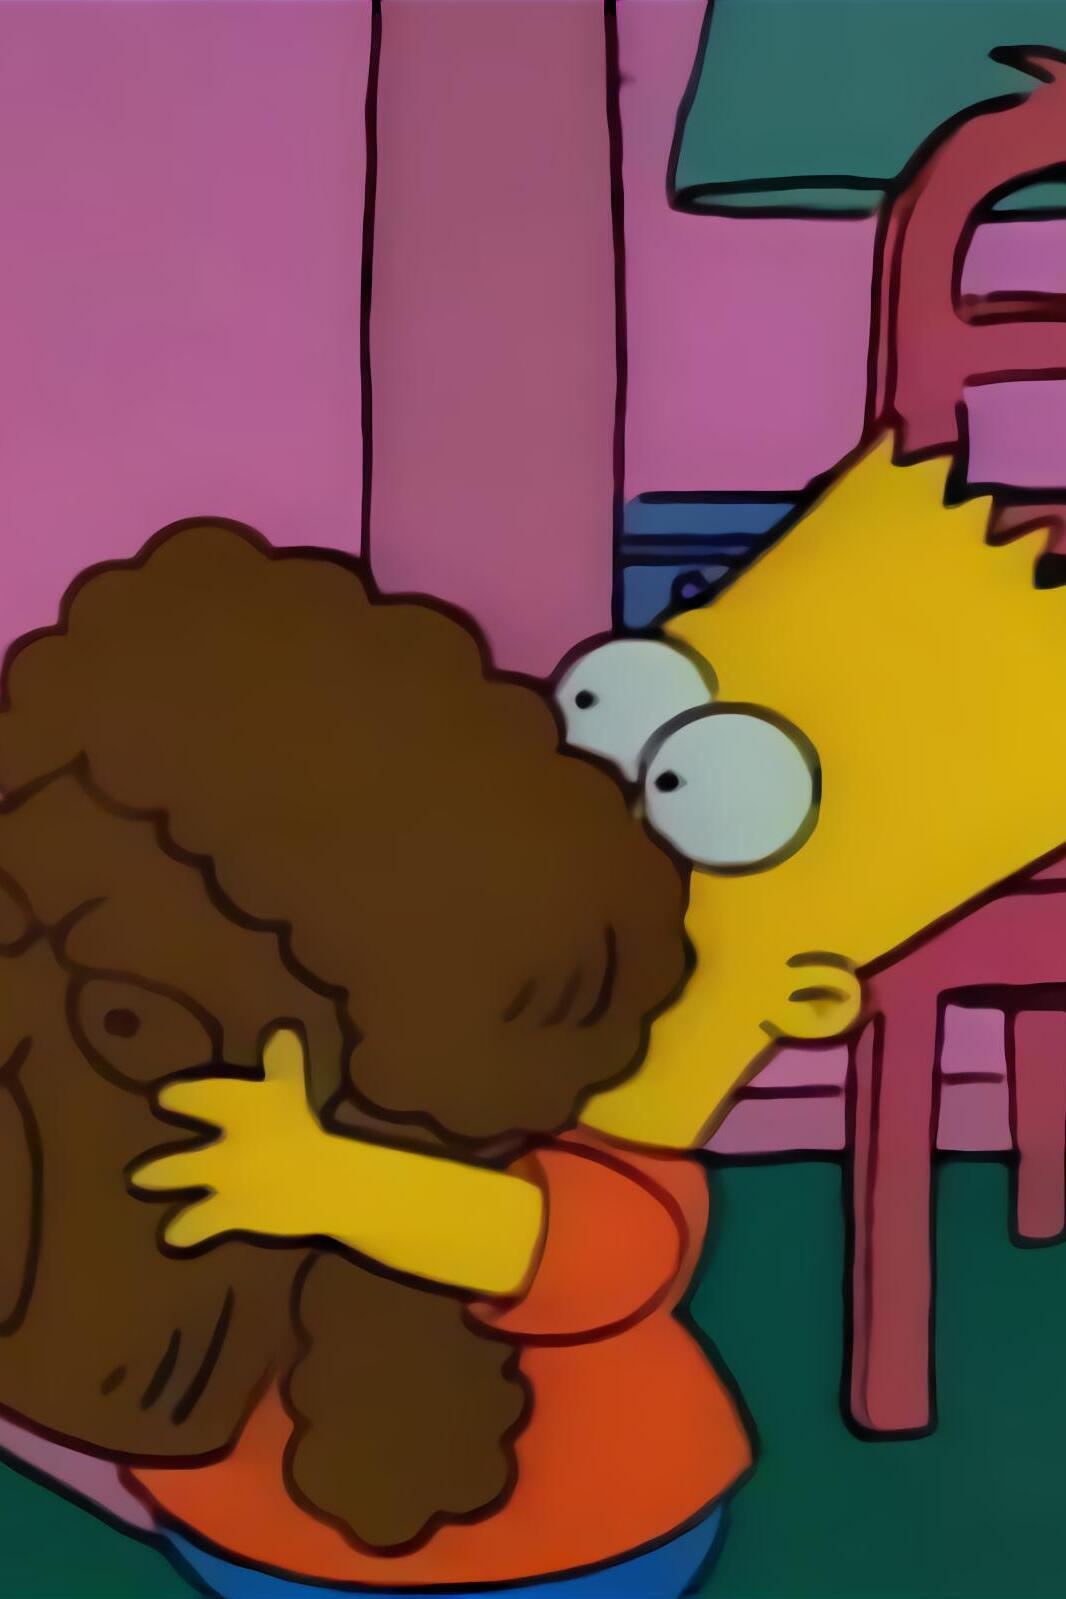 Les Simpson - Bart a perdu la tête